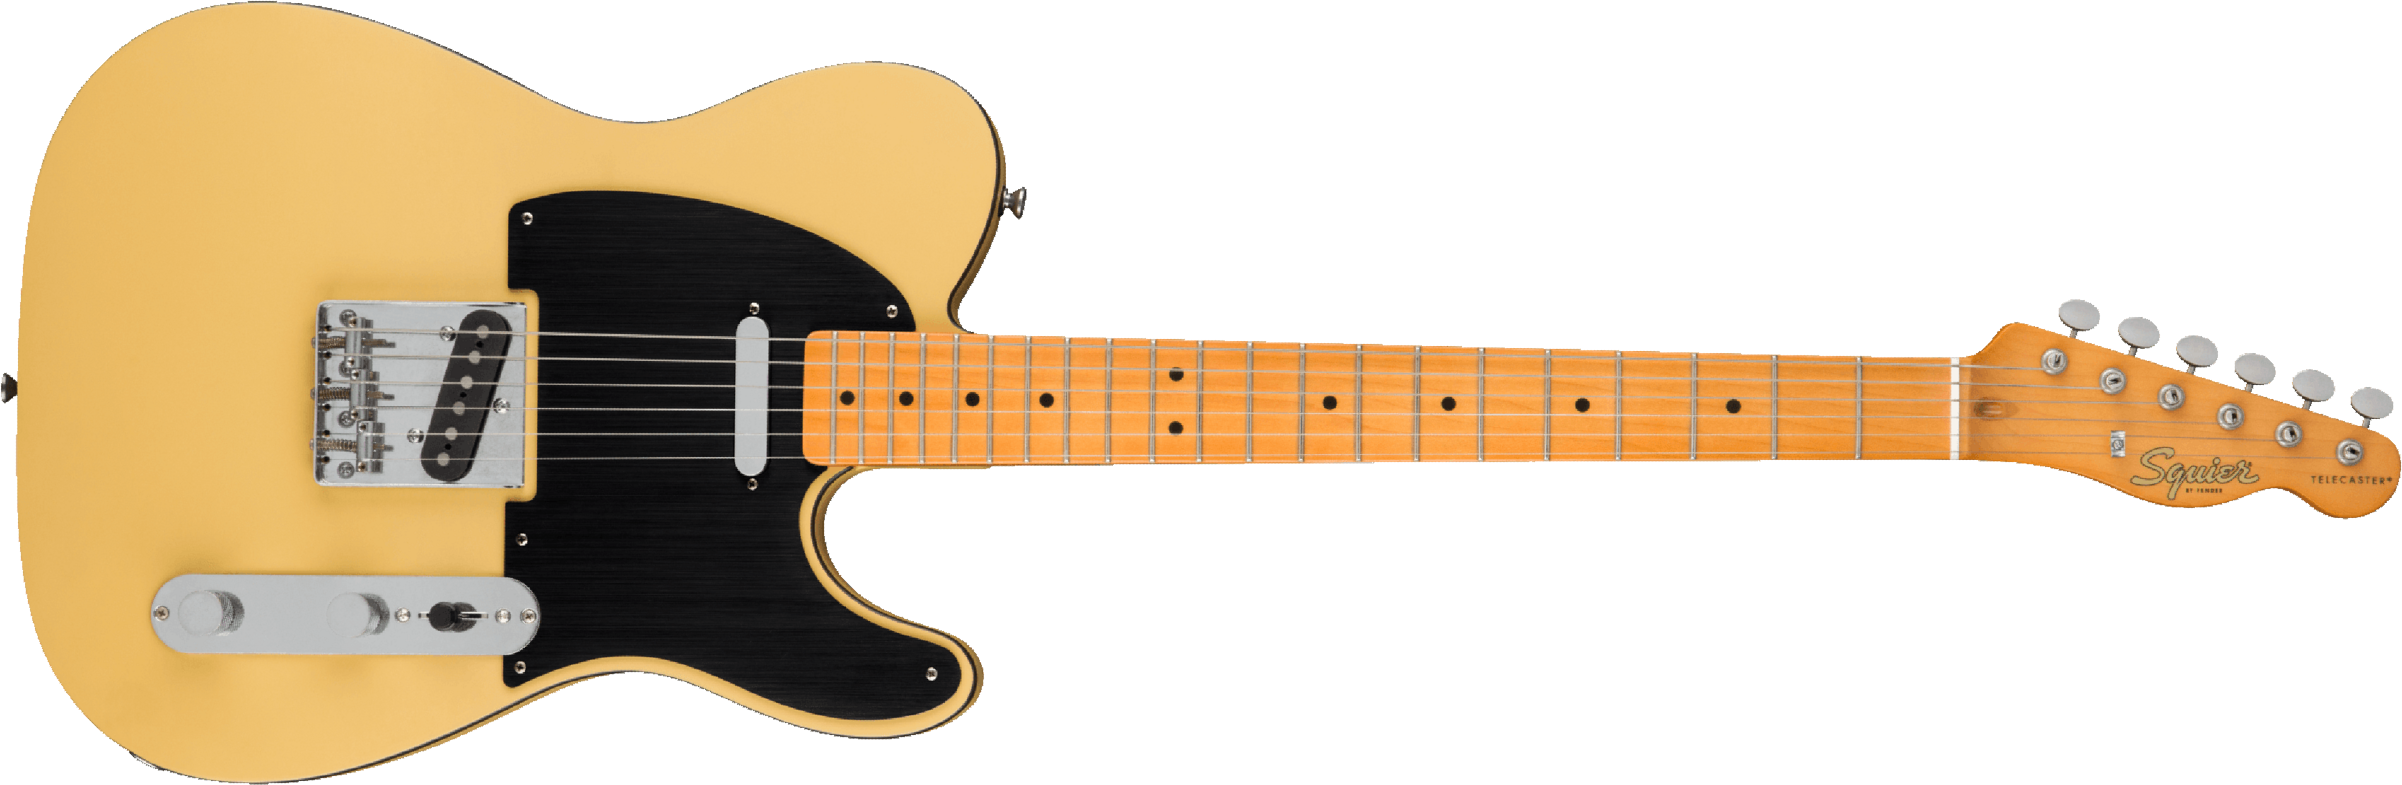 Squier Tele 40th Anniversary Vintage Edition Mn - Satin Vintage Blonde - Televorm elektrische gitaar - Main picture